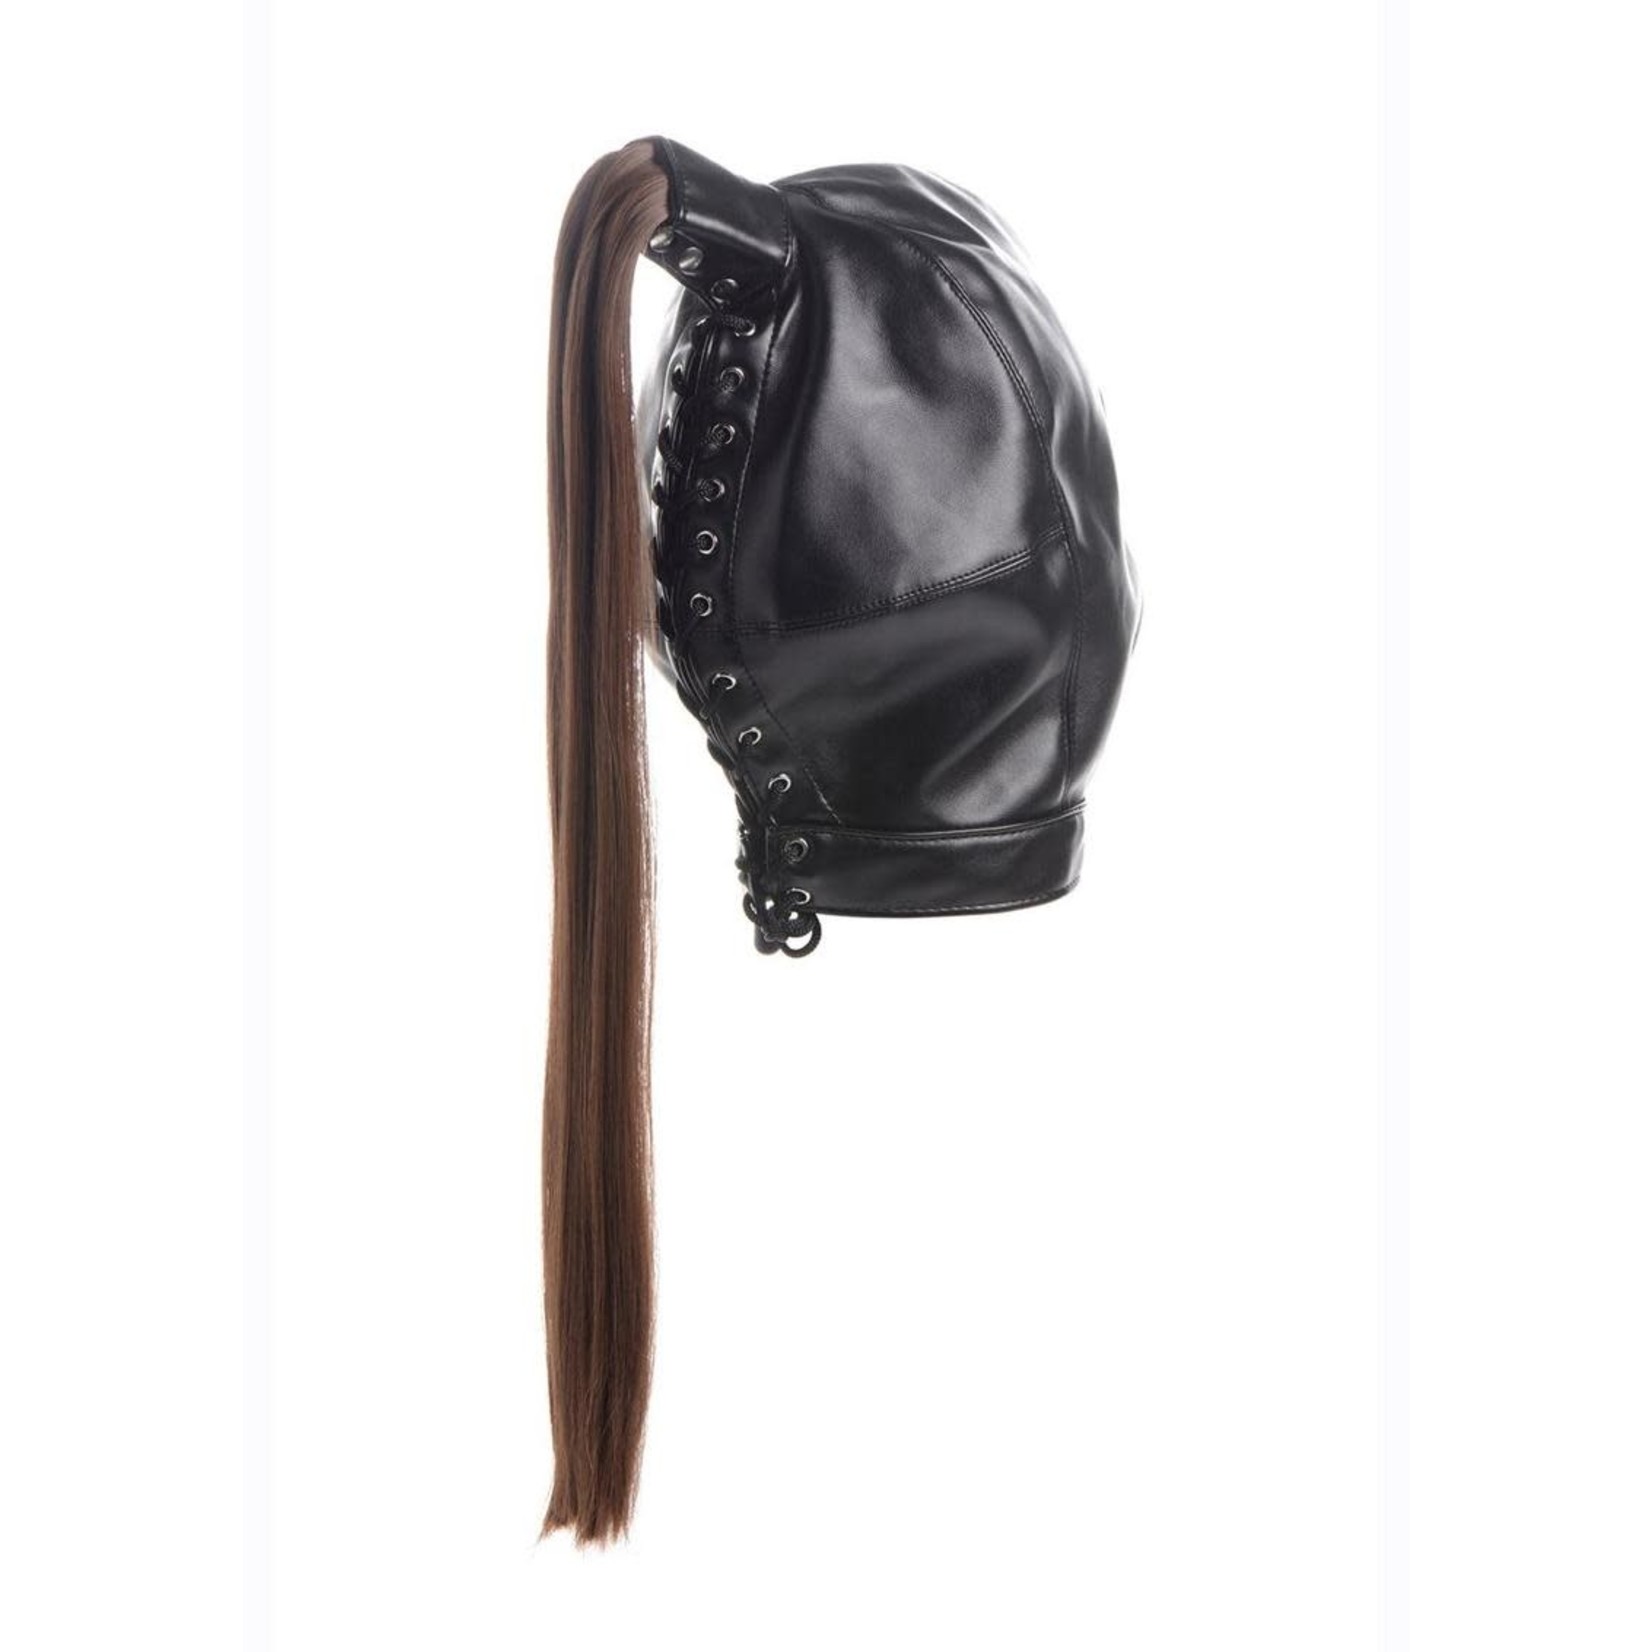 Strict Brunette Ponytail Bondage Hood - Black